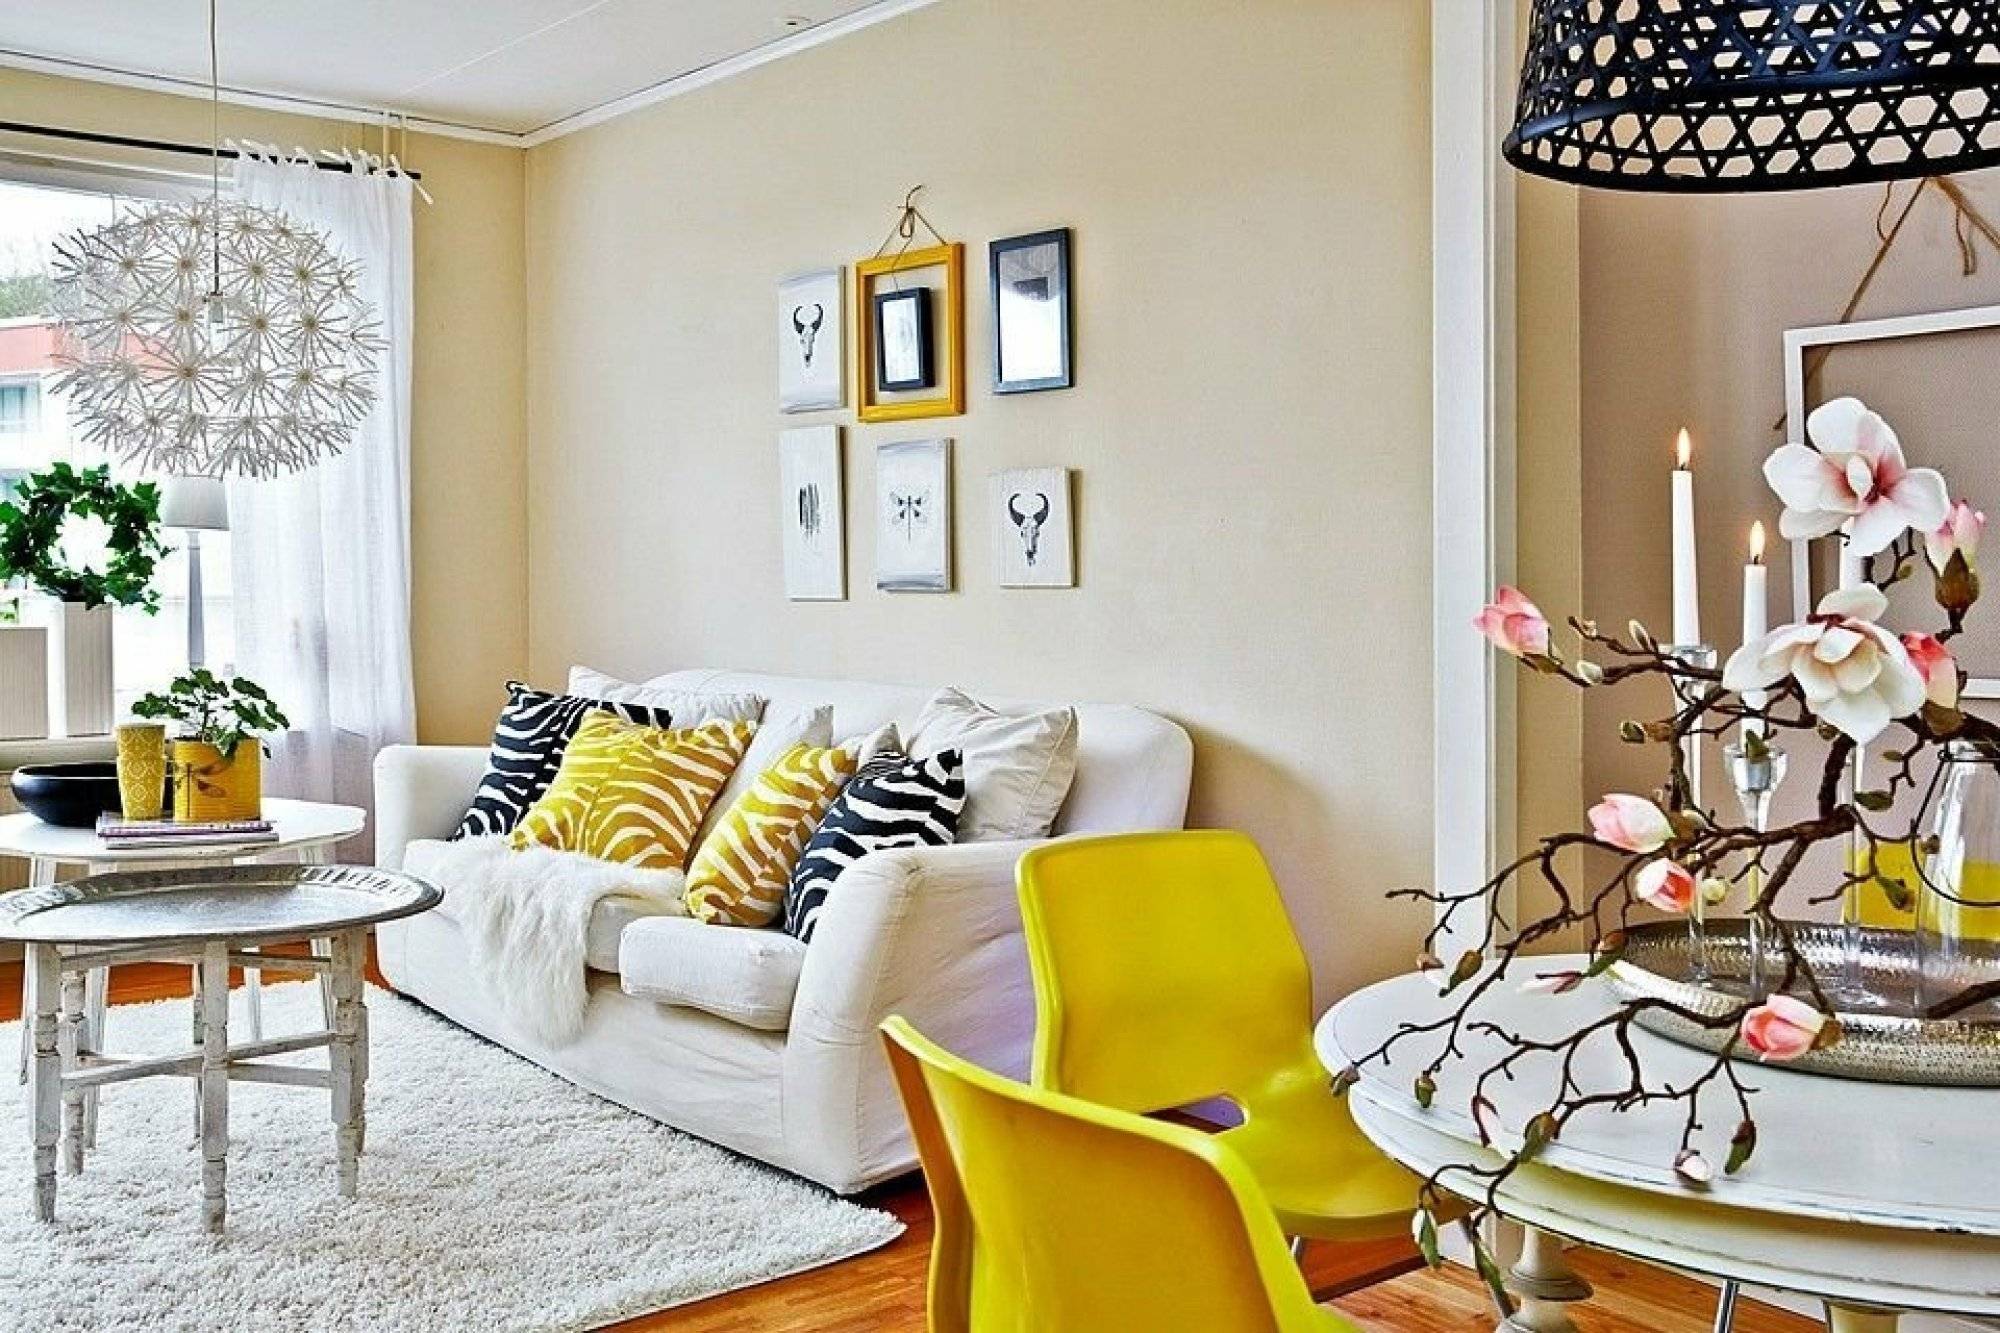 Зал в желтом цвете: тона для гостиной белой, фото серого украшения, оформление интерьера зеленым и красным
проектирование зала в желтом цвете: 9 вариантов сочетаний – дизайн интерьера и ремонт квартиры своими руками